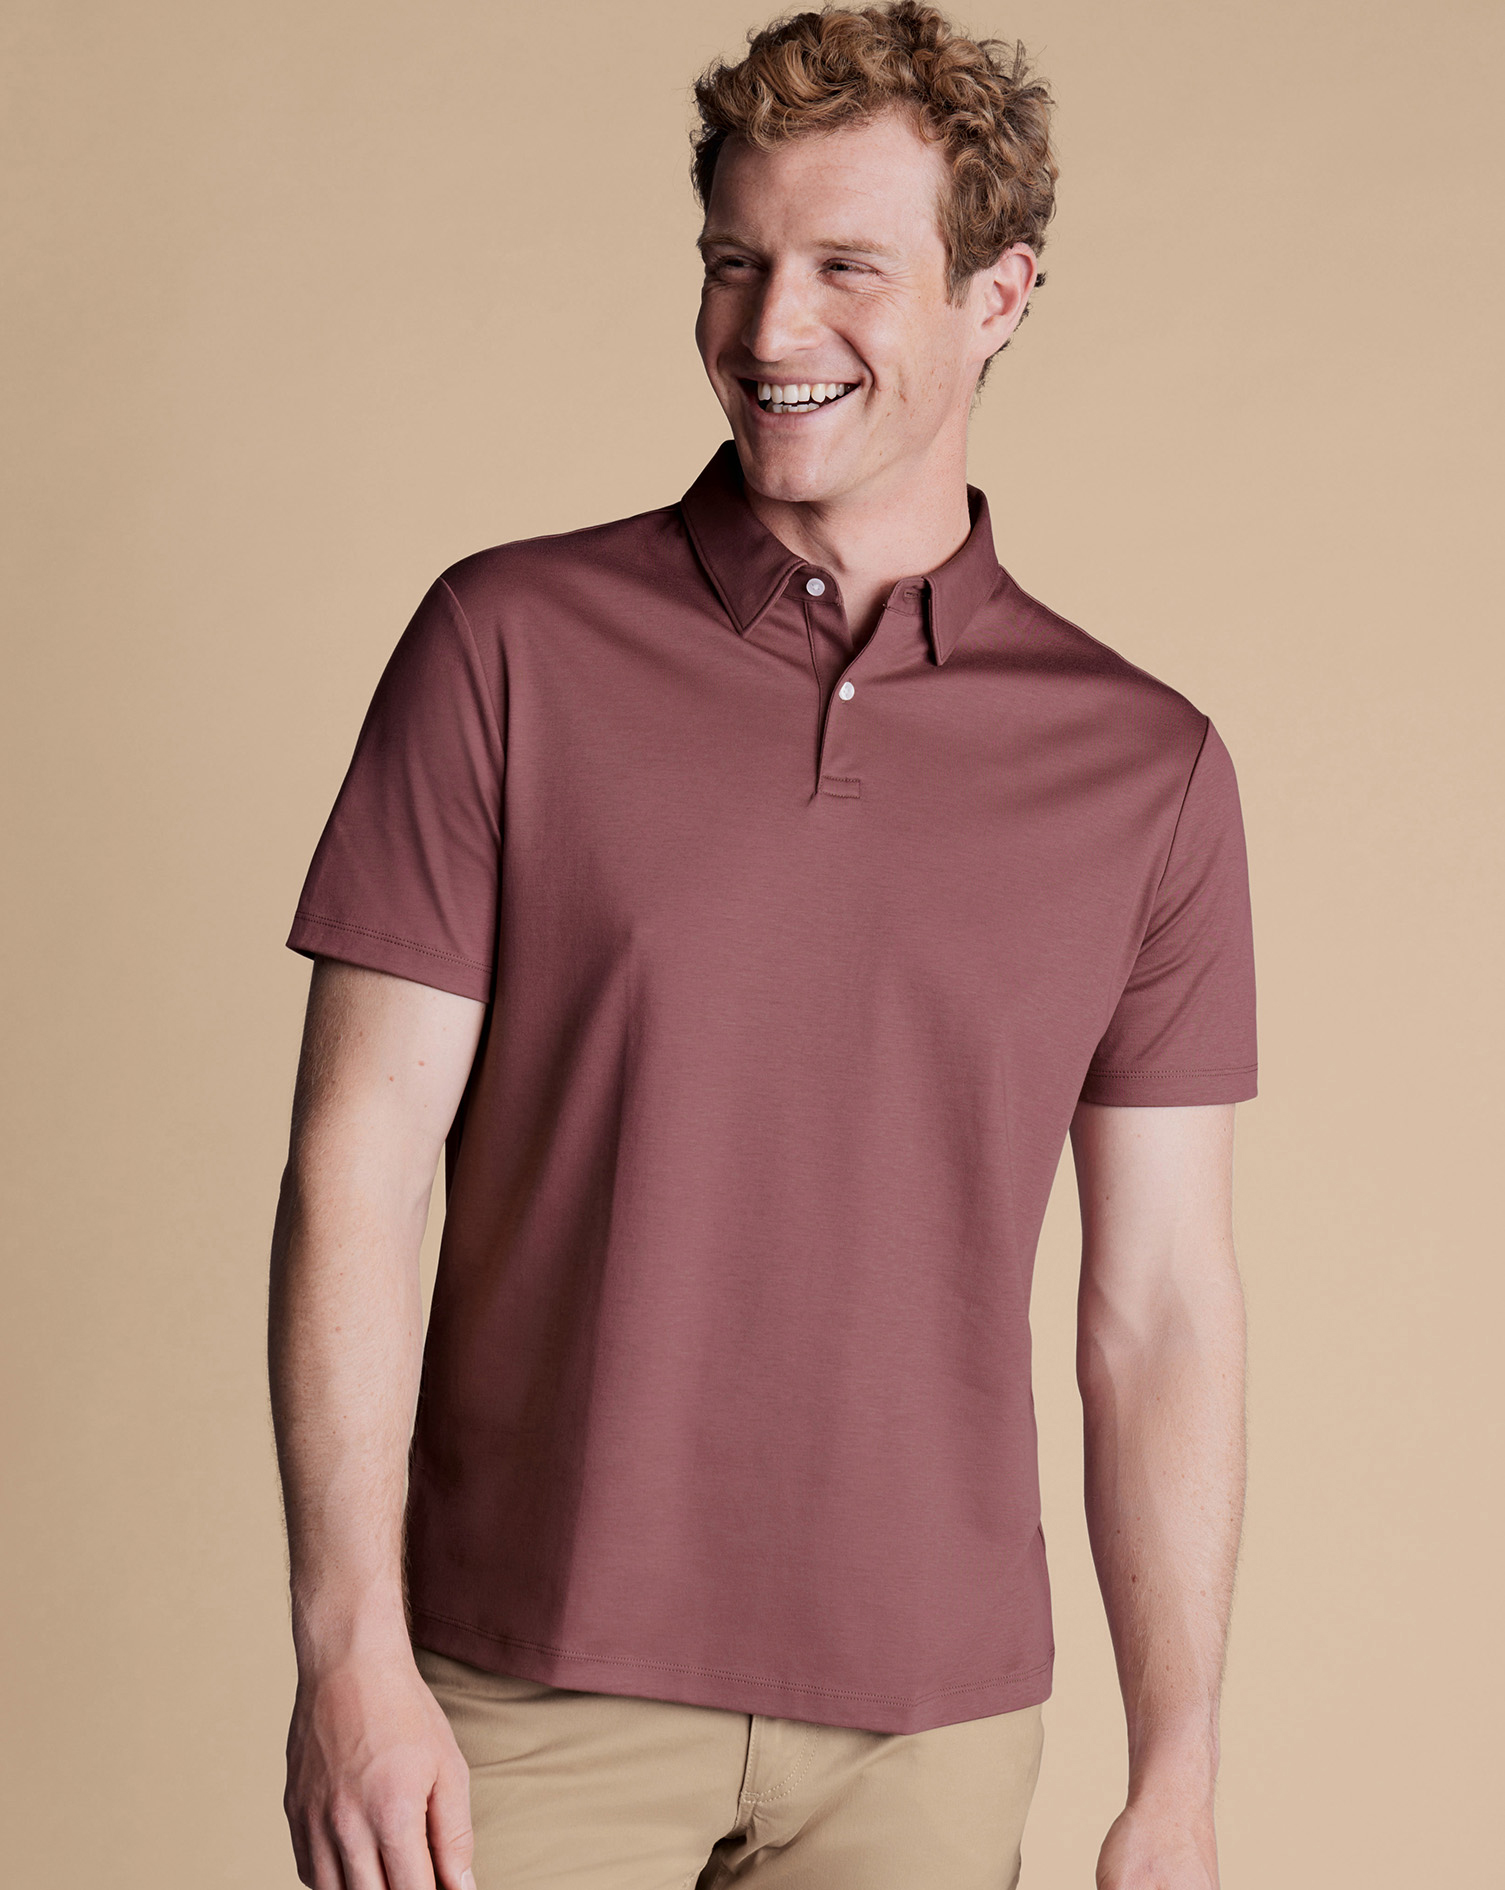 Men's Charles Tyrwhitt Smart Jersey Polo Shirt - Claret Pink Size XL Cotton
